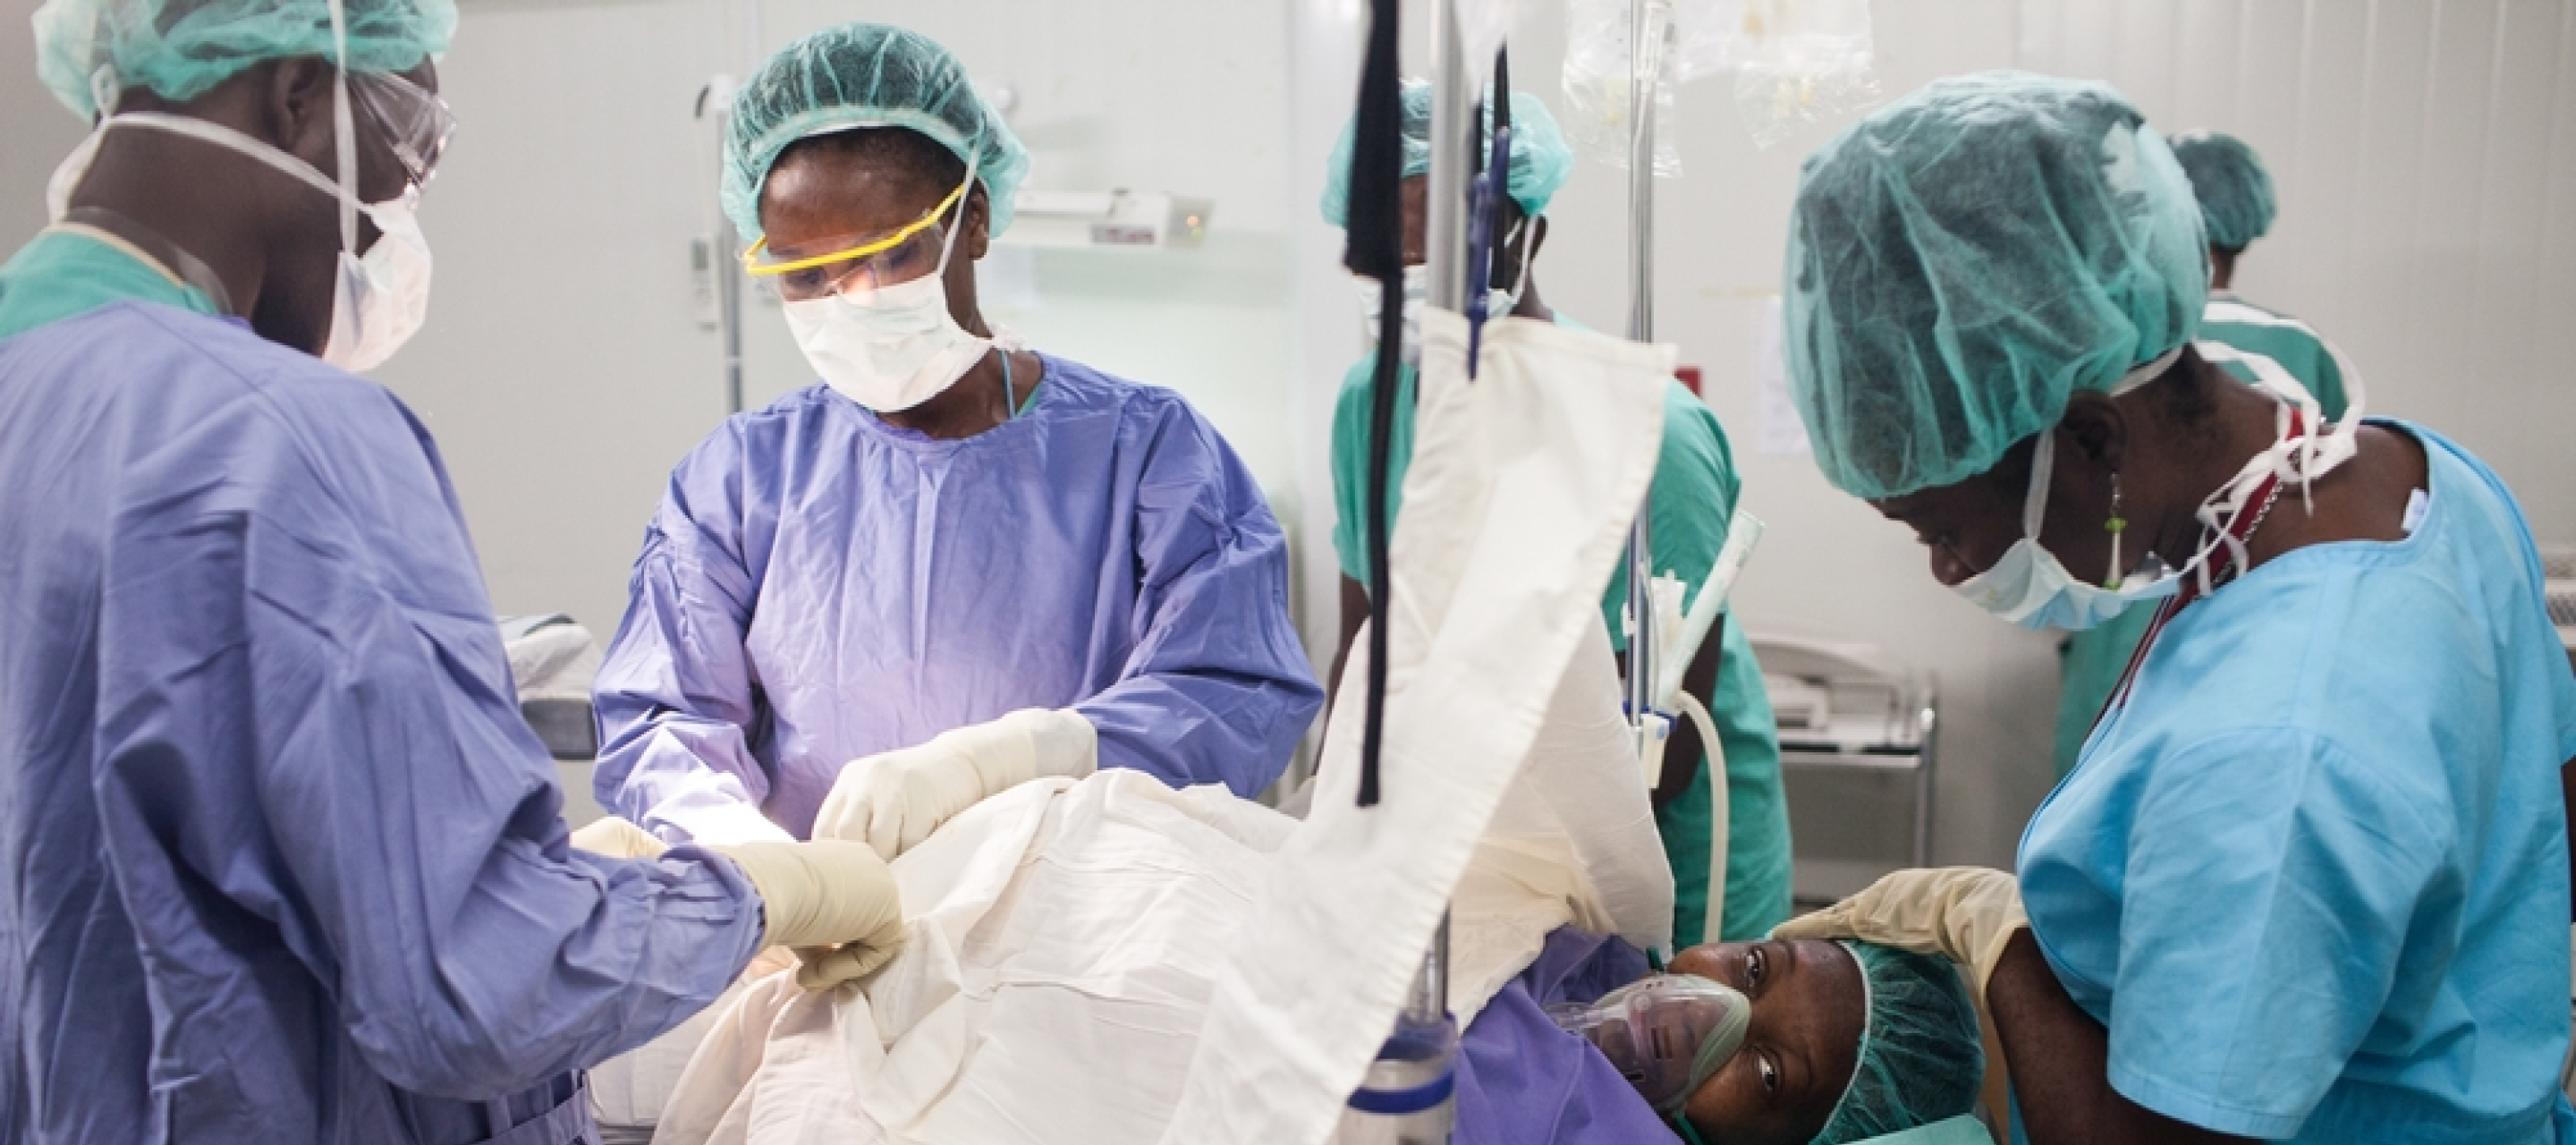 Medizinsches Personal führt einen Kaiserschnitt bei einer Frau durch.